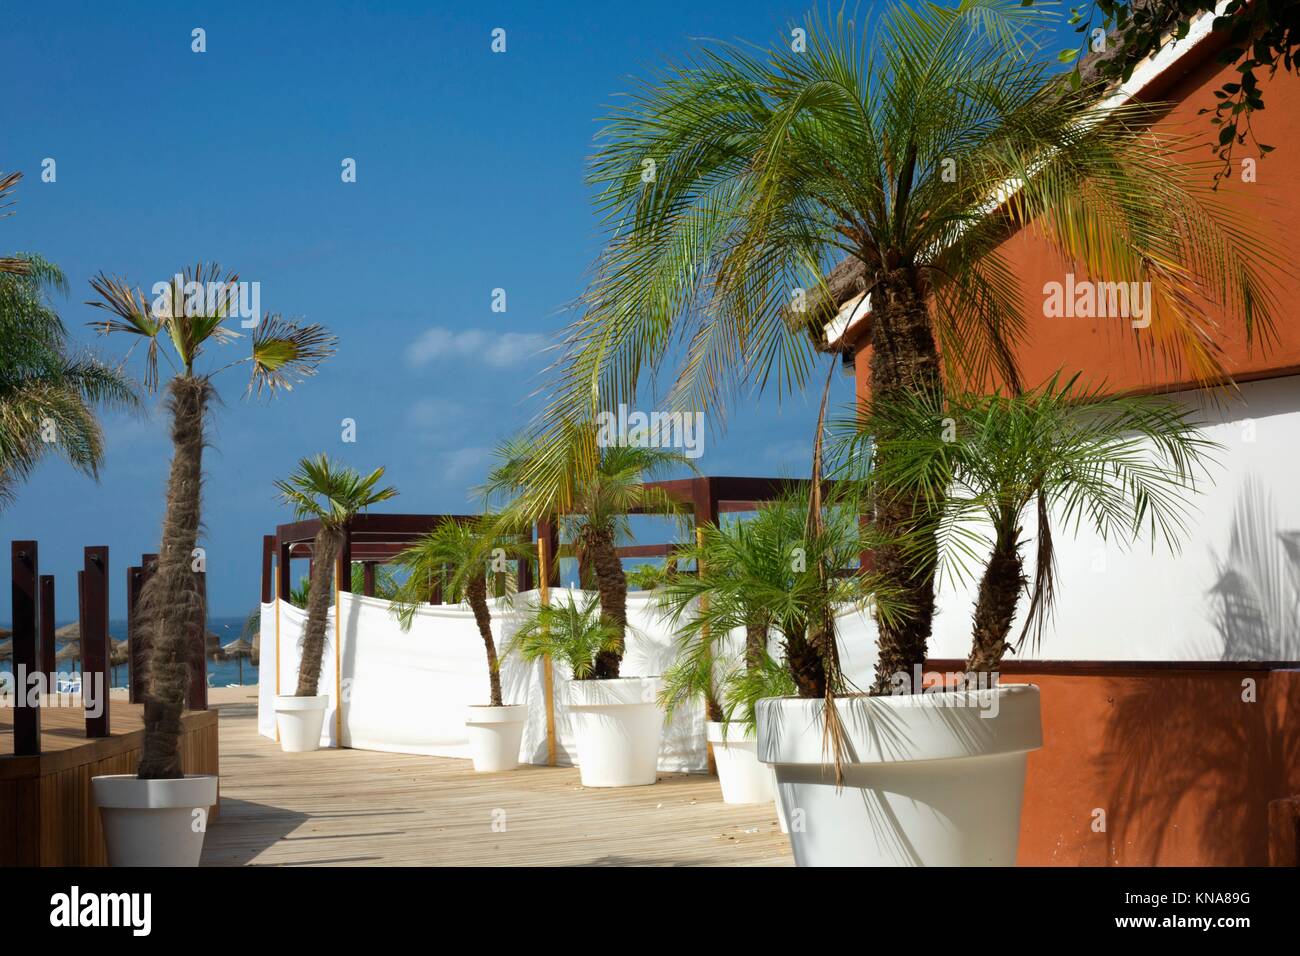 Beach Resort corredor lleno de palmeras en macetas, al sur de España. Foto de stock